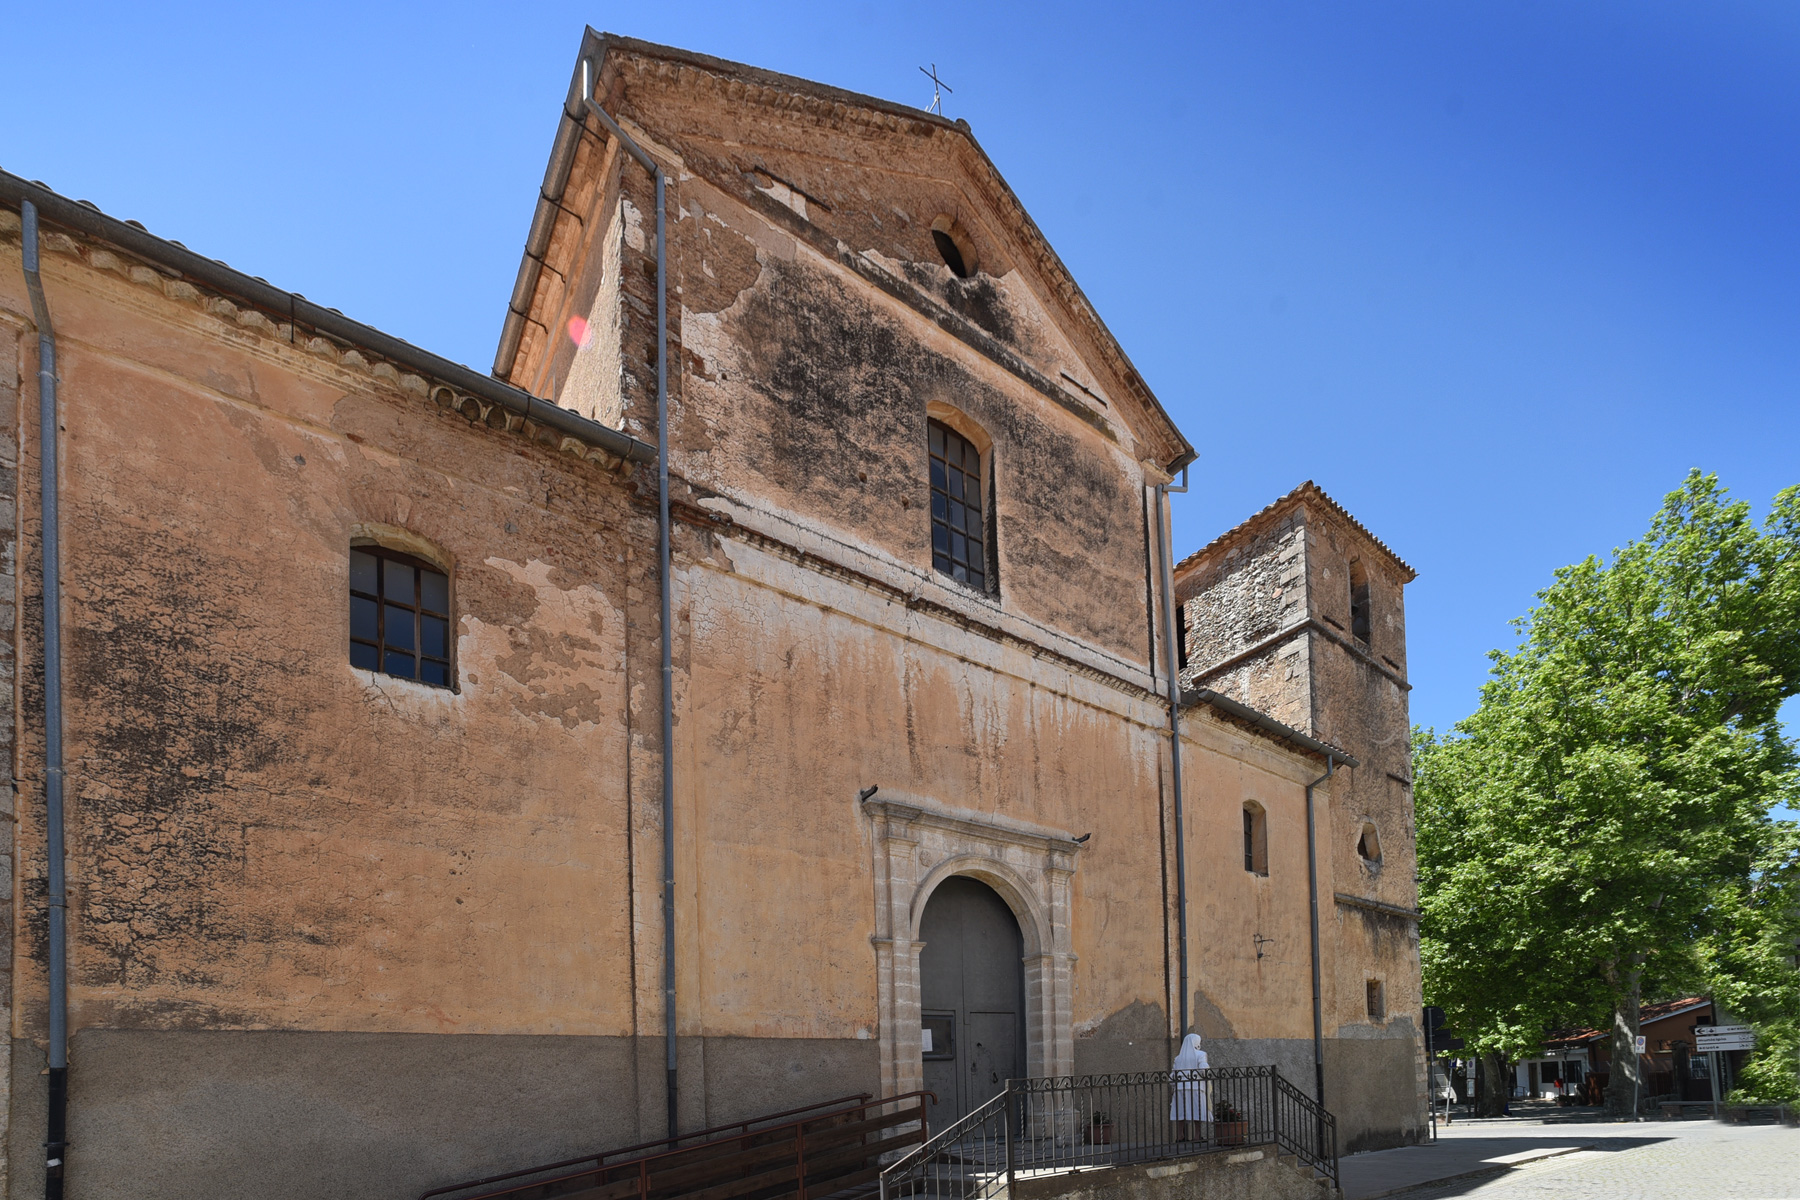 Chiesa di San Nicola - Progetto "Dipignano Sacra"